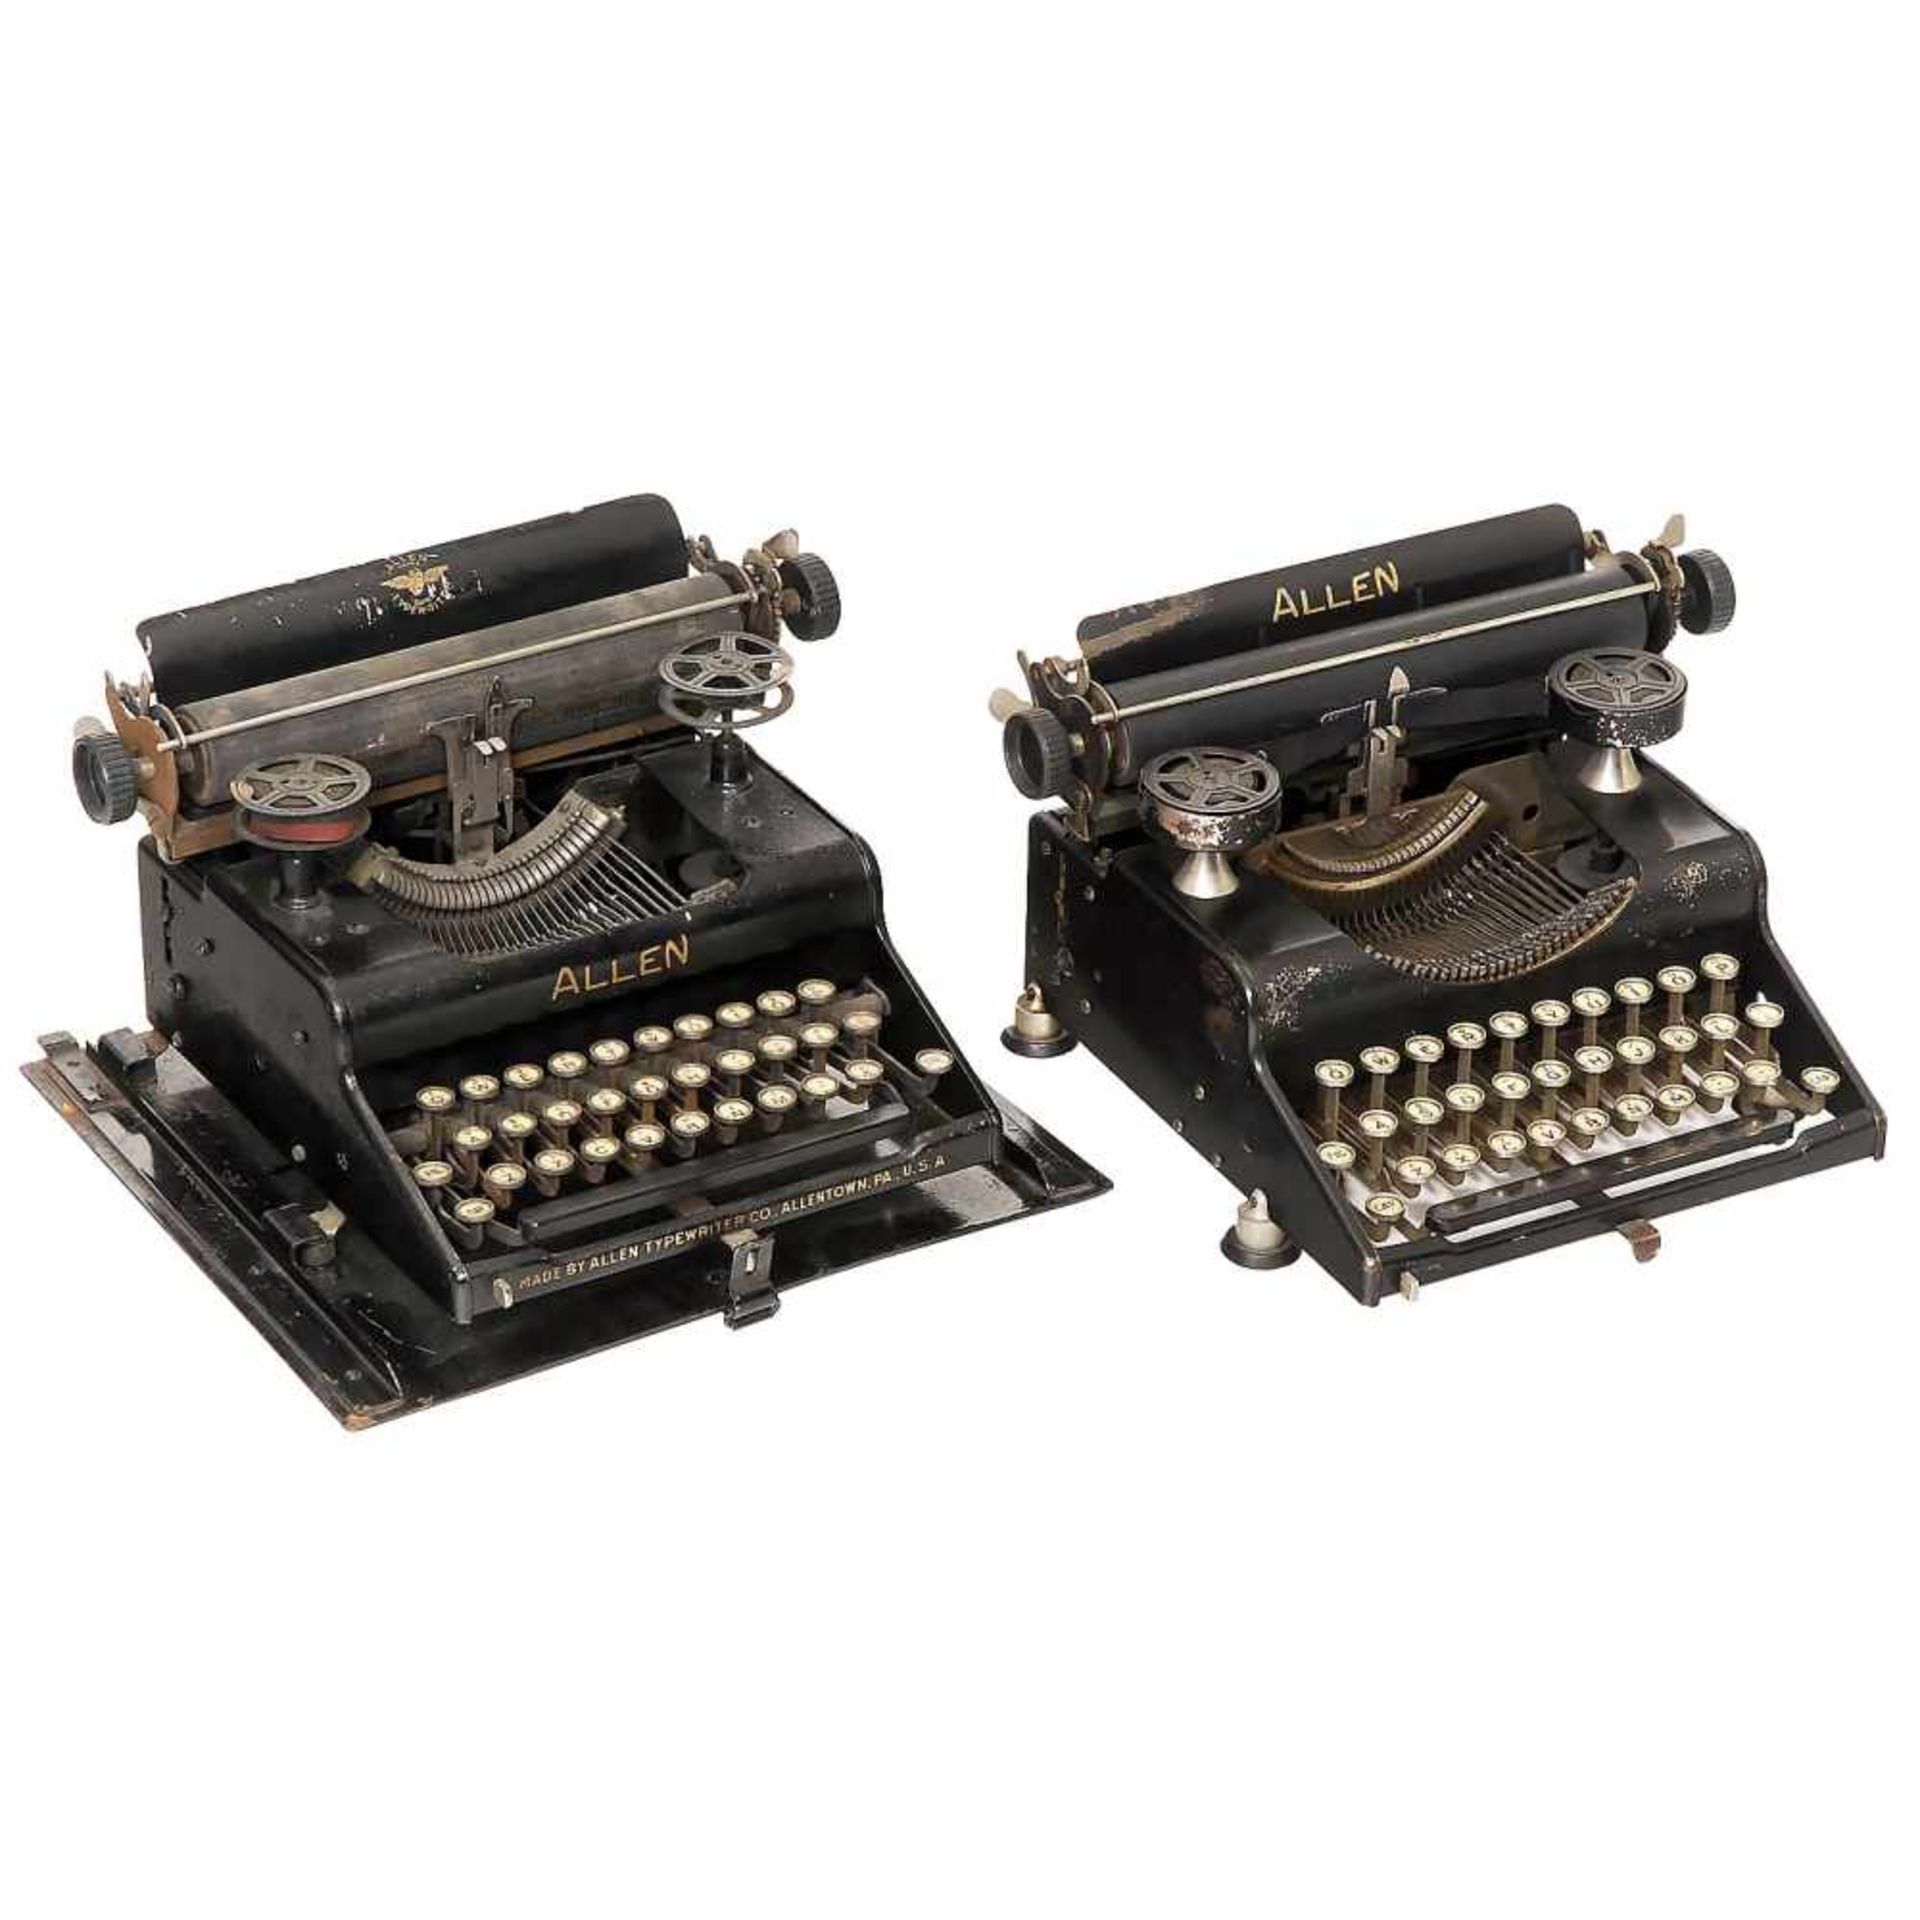 2 "Allen" Typewriters, 1918